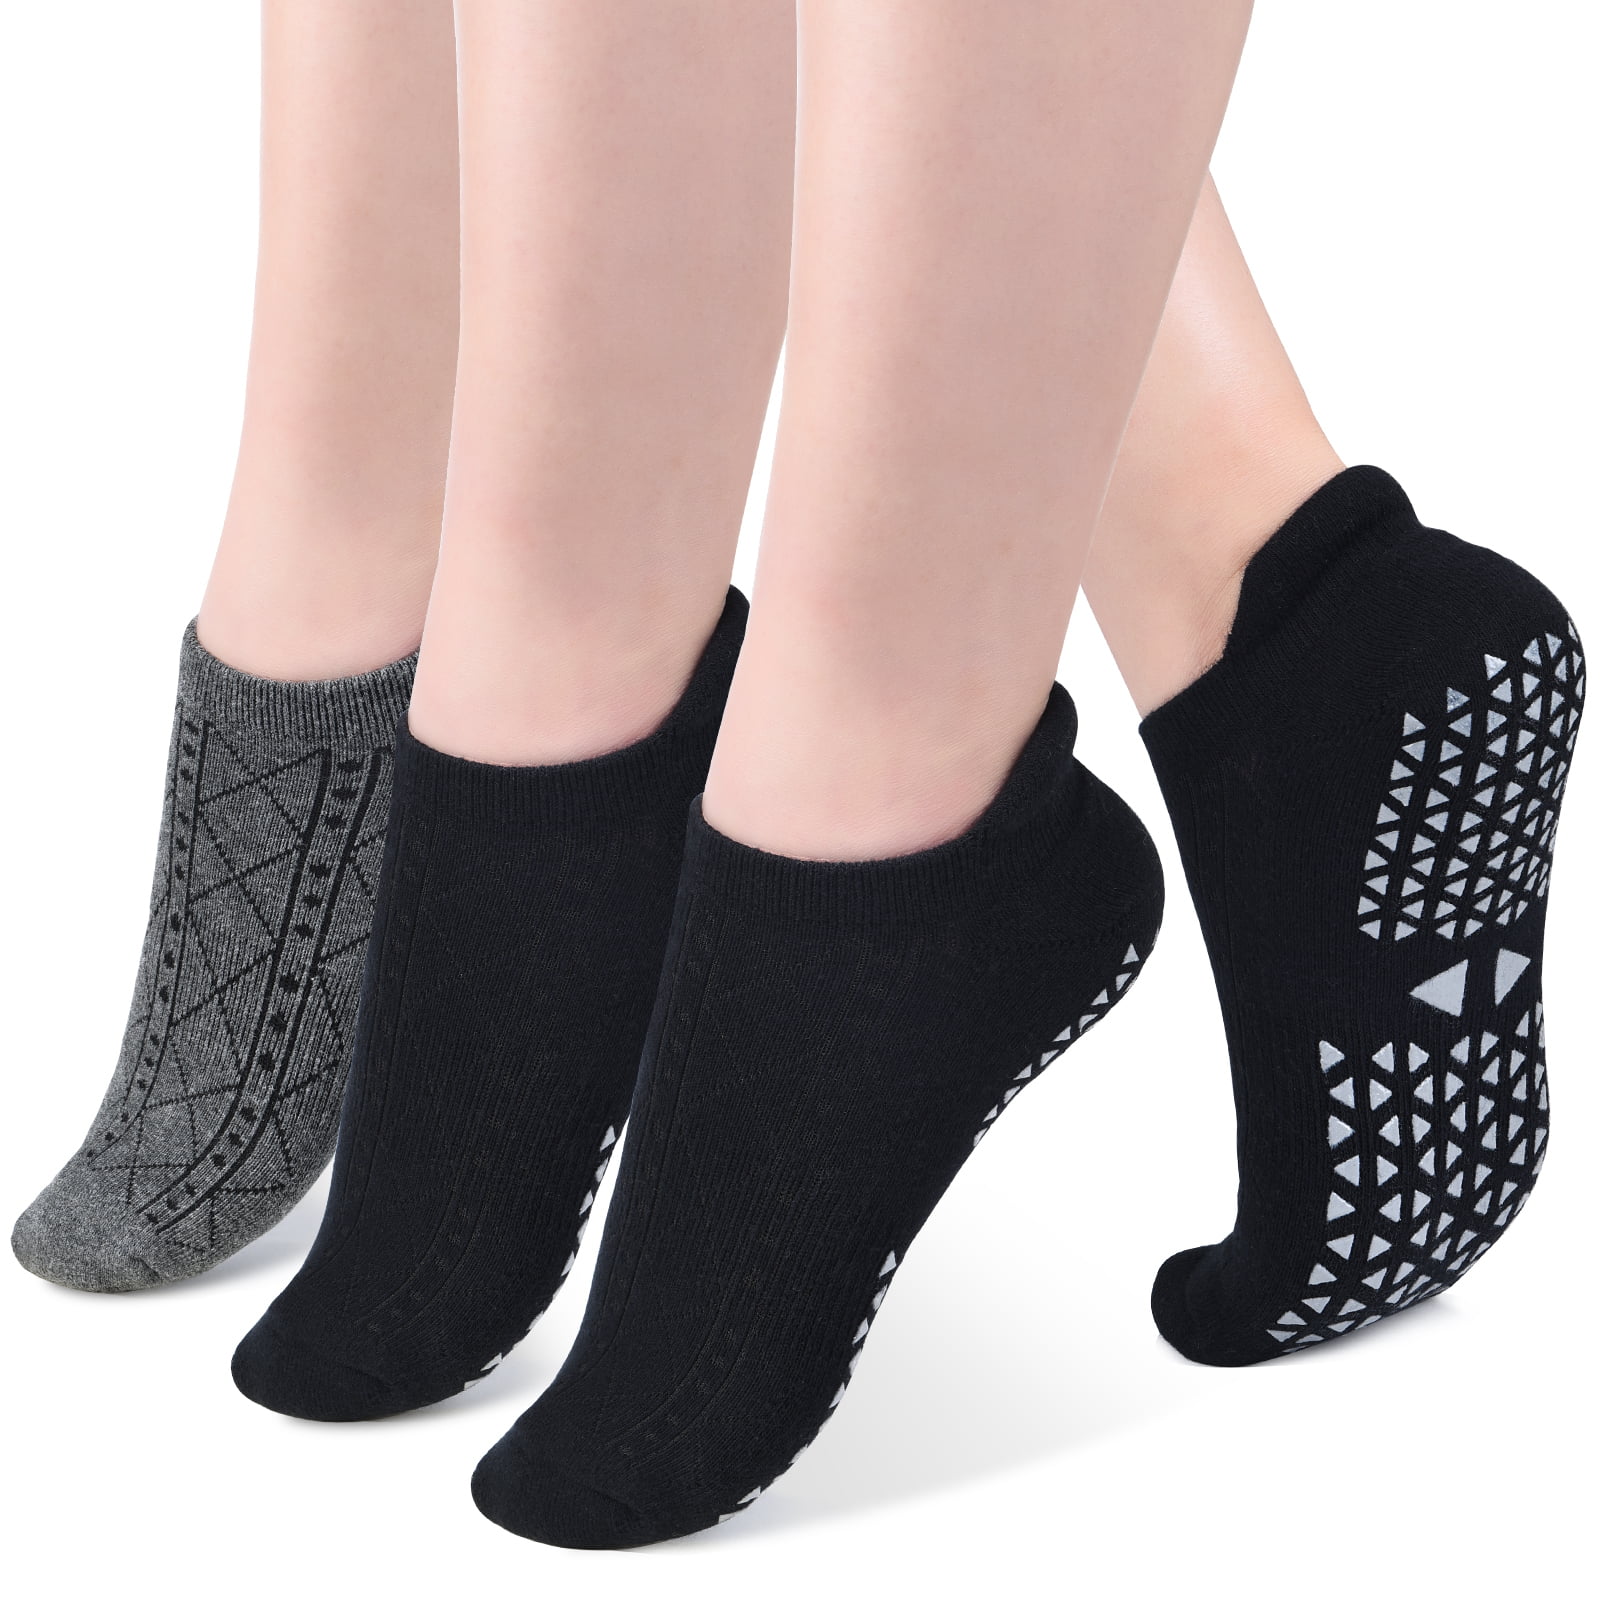 Yoga Non-Slip Socks Professional Ultra-Lightweight Soft Breathable Yoga Open Toe Back Socks Training Sock for Women Gift Yoga Dance Barre Pilates